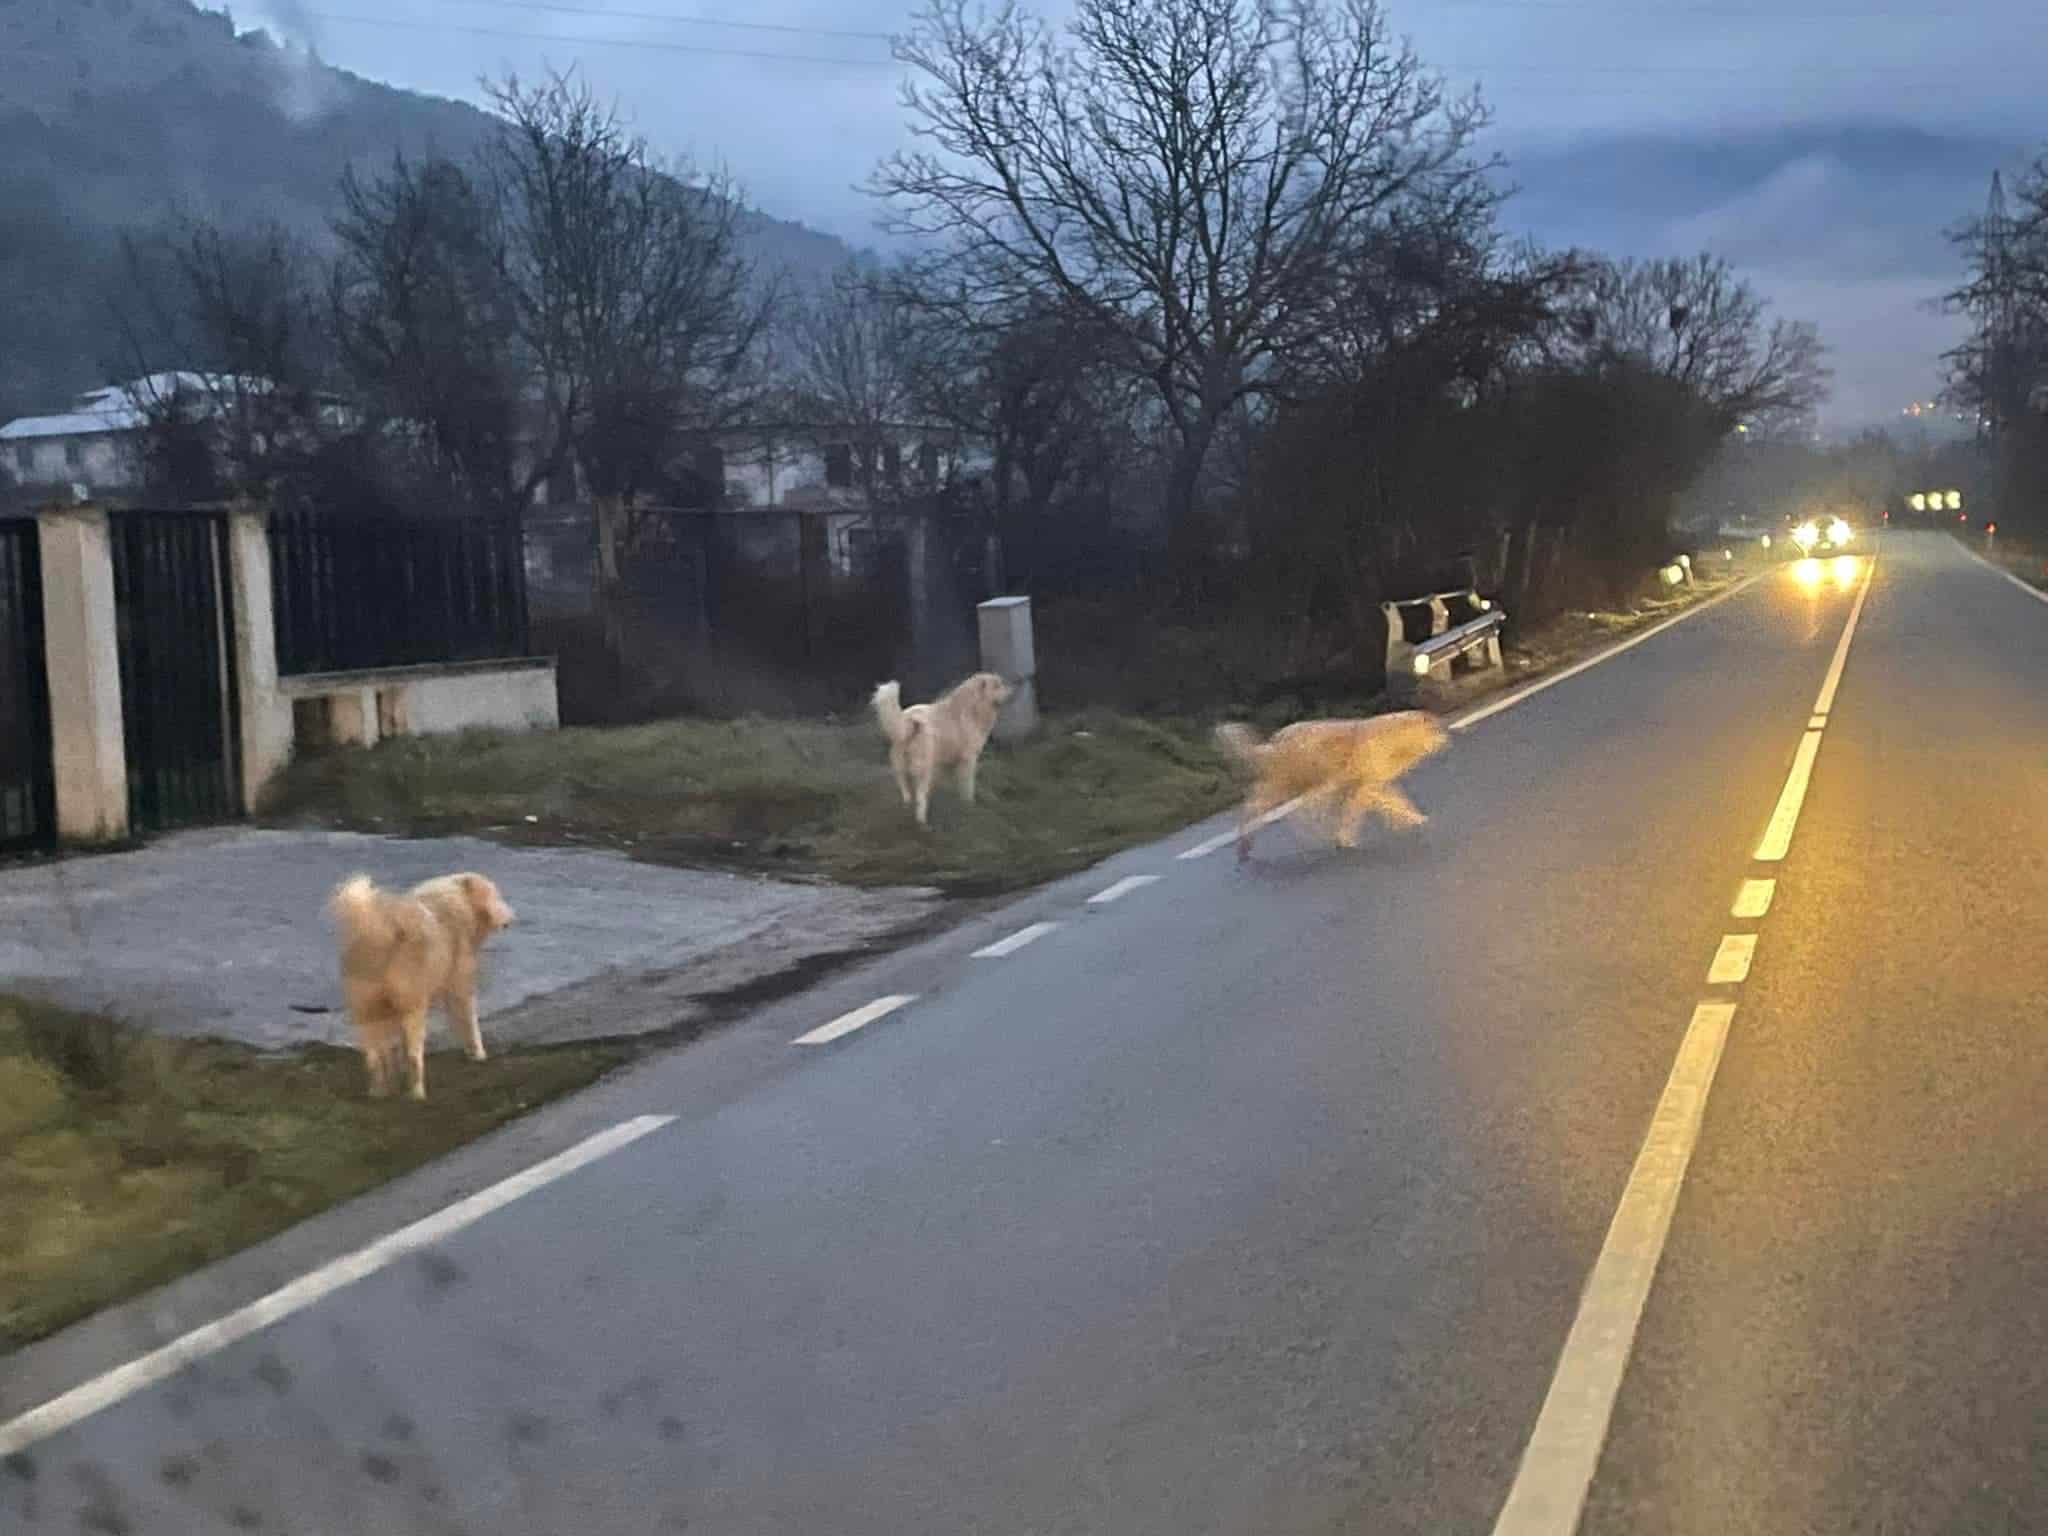 Pericolo per branco di cani randagi lungo la strada che collega Celano ad Avezzano